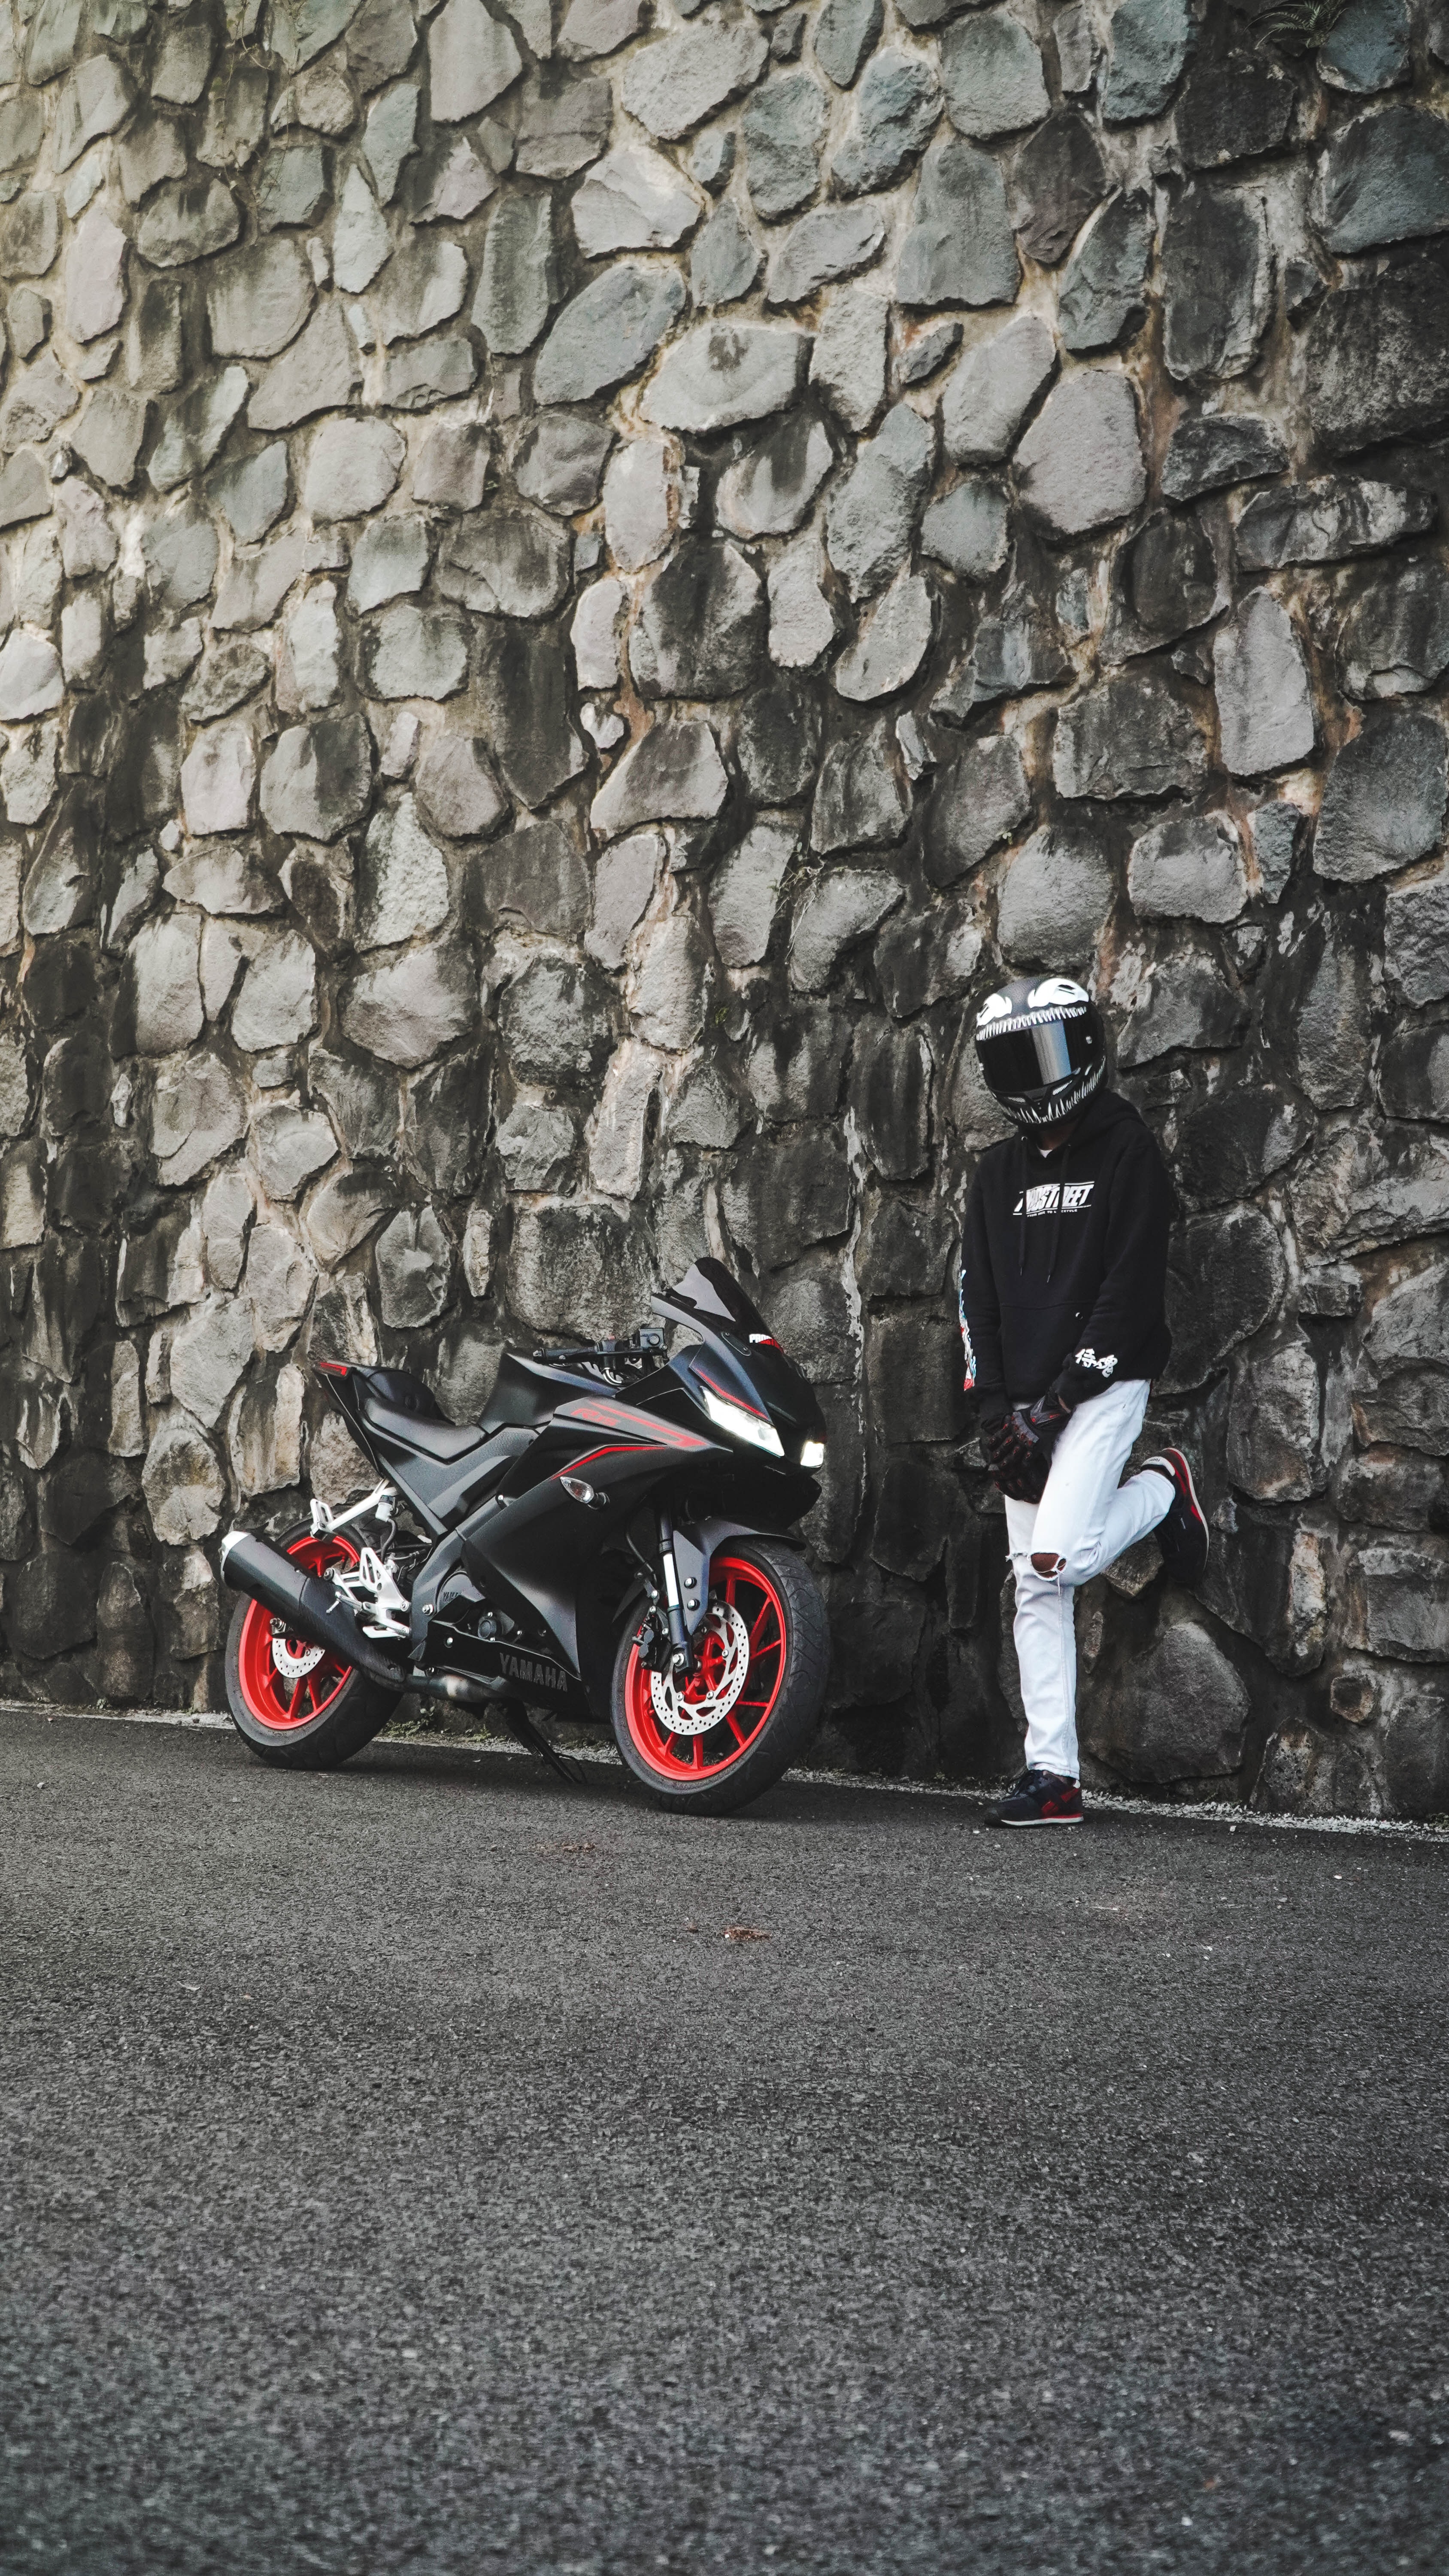 motorcyclist, motorcycle, bike, motorcycles, wall, helmet